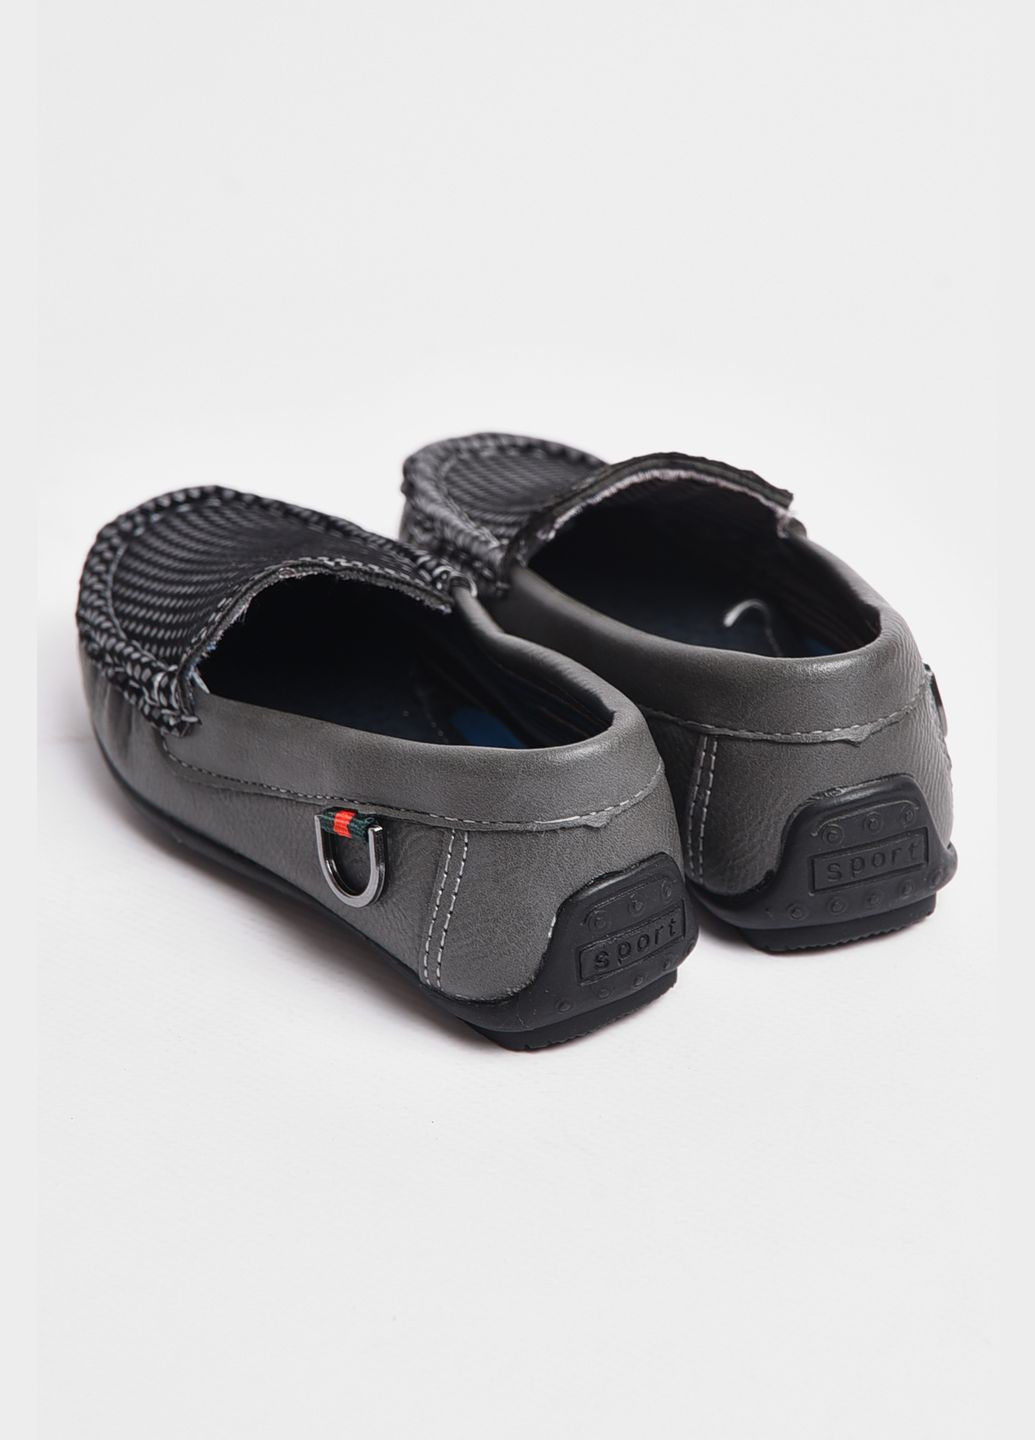 Серые туфли детские для мальчика серого цвета без шнурков Let's Shop